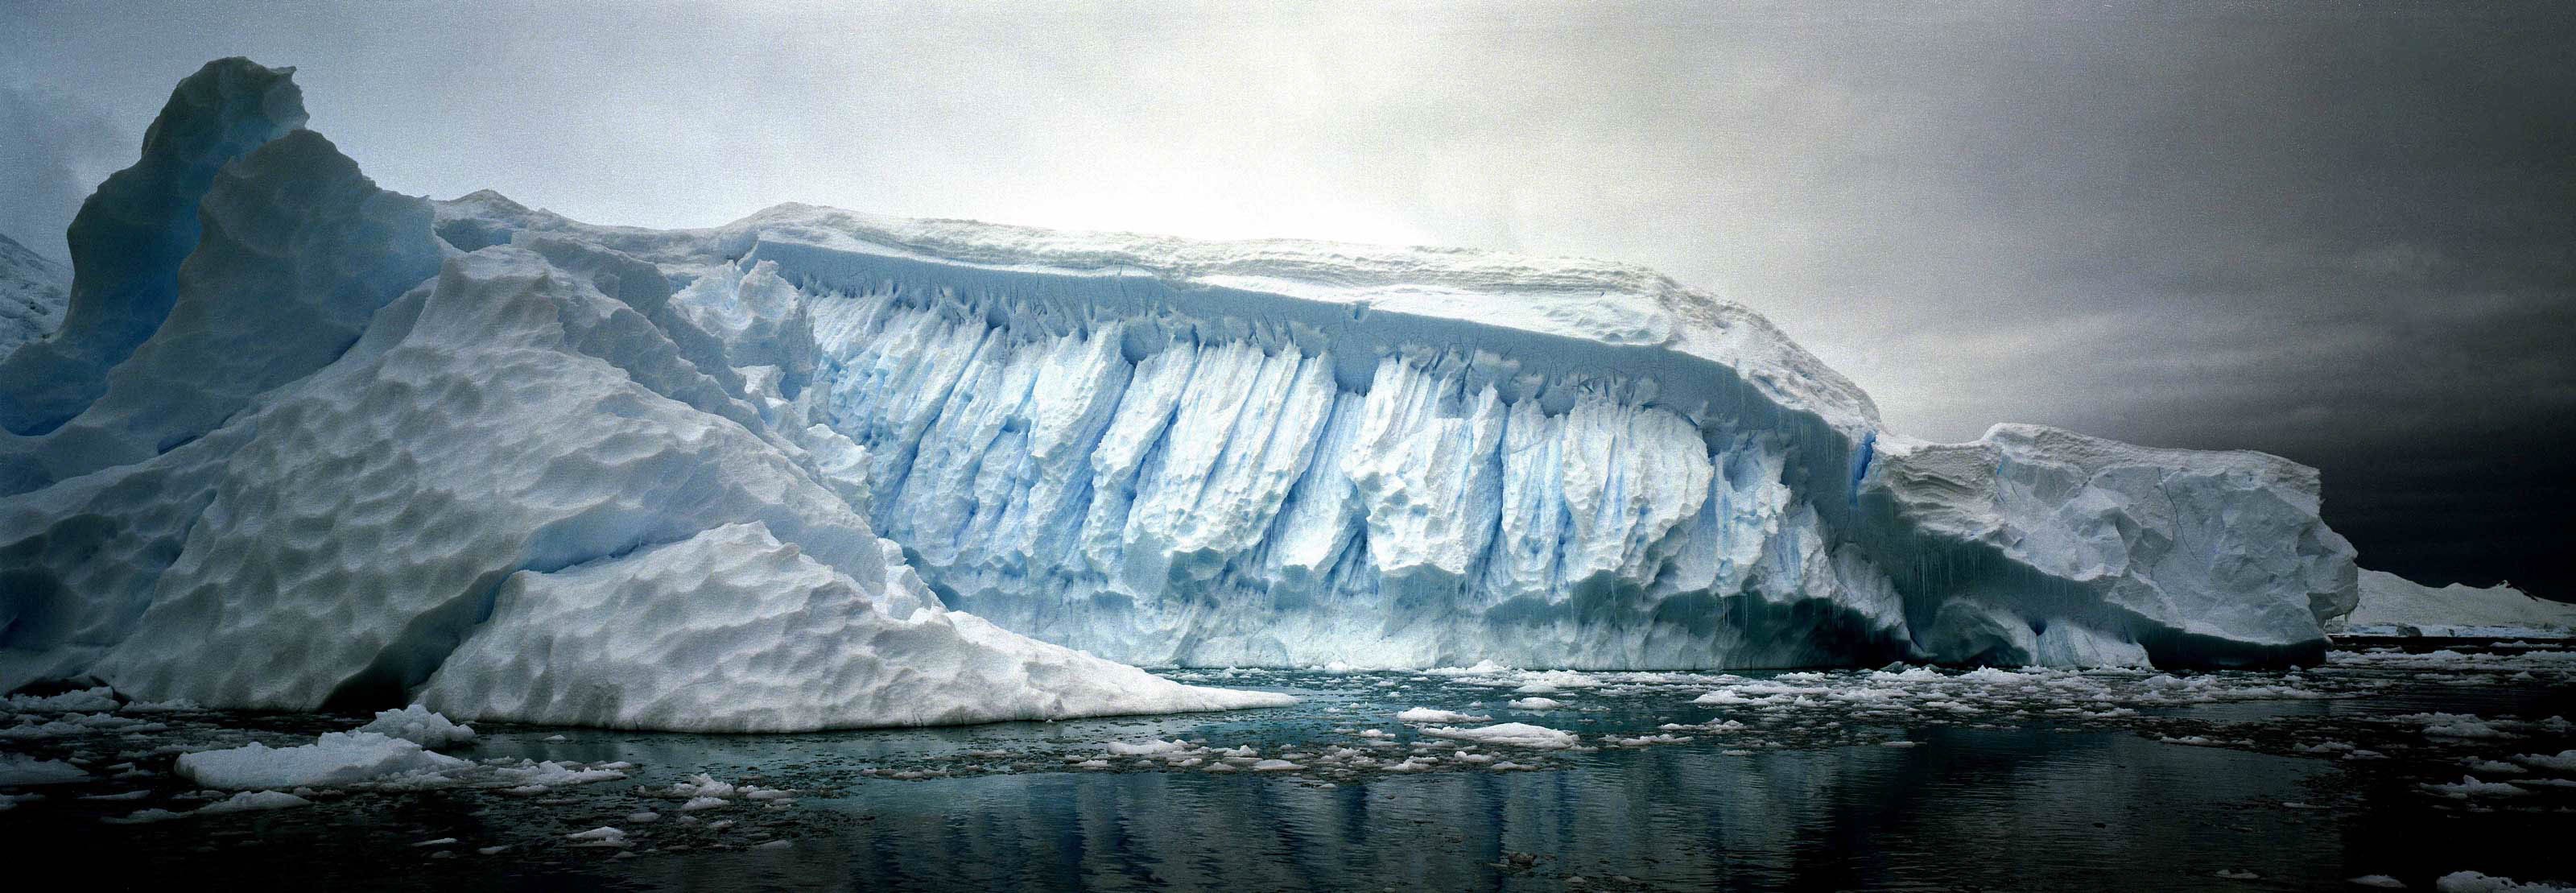 O-56-2_ijsbergen.jpg